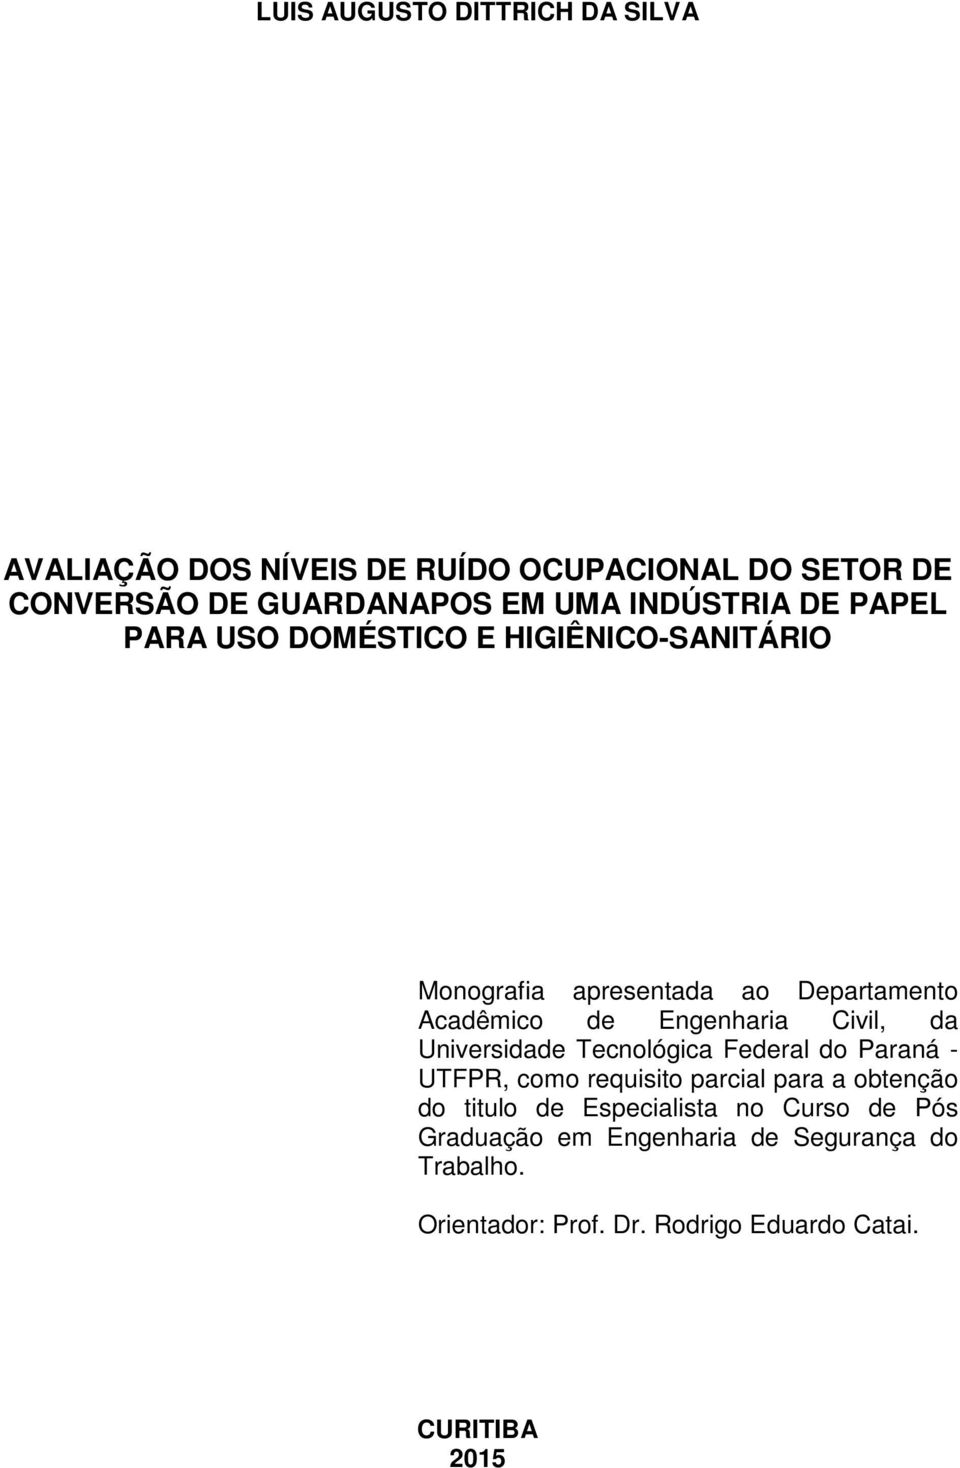 Civil, da Universidade Tecnológica Federal do Paraná - UTFPR, como requisito parcial para a obtenção do titulo de